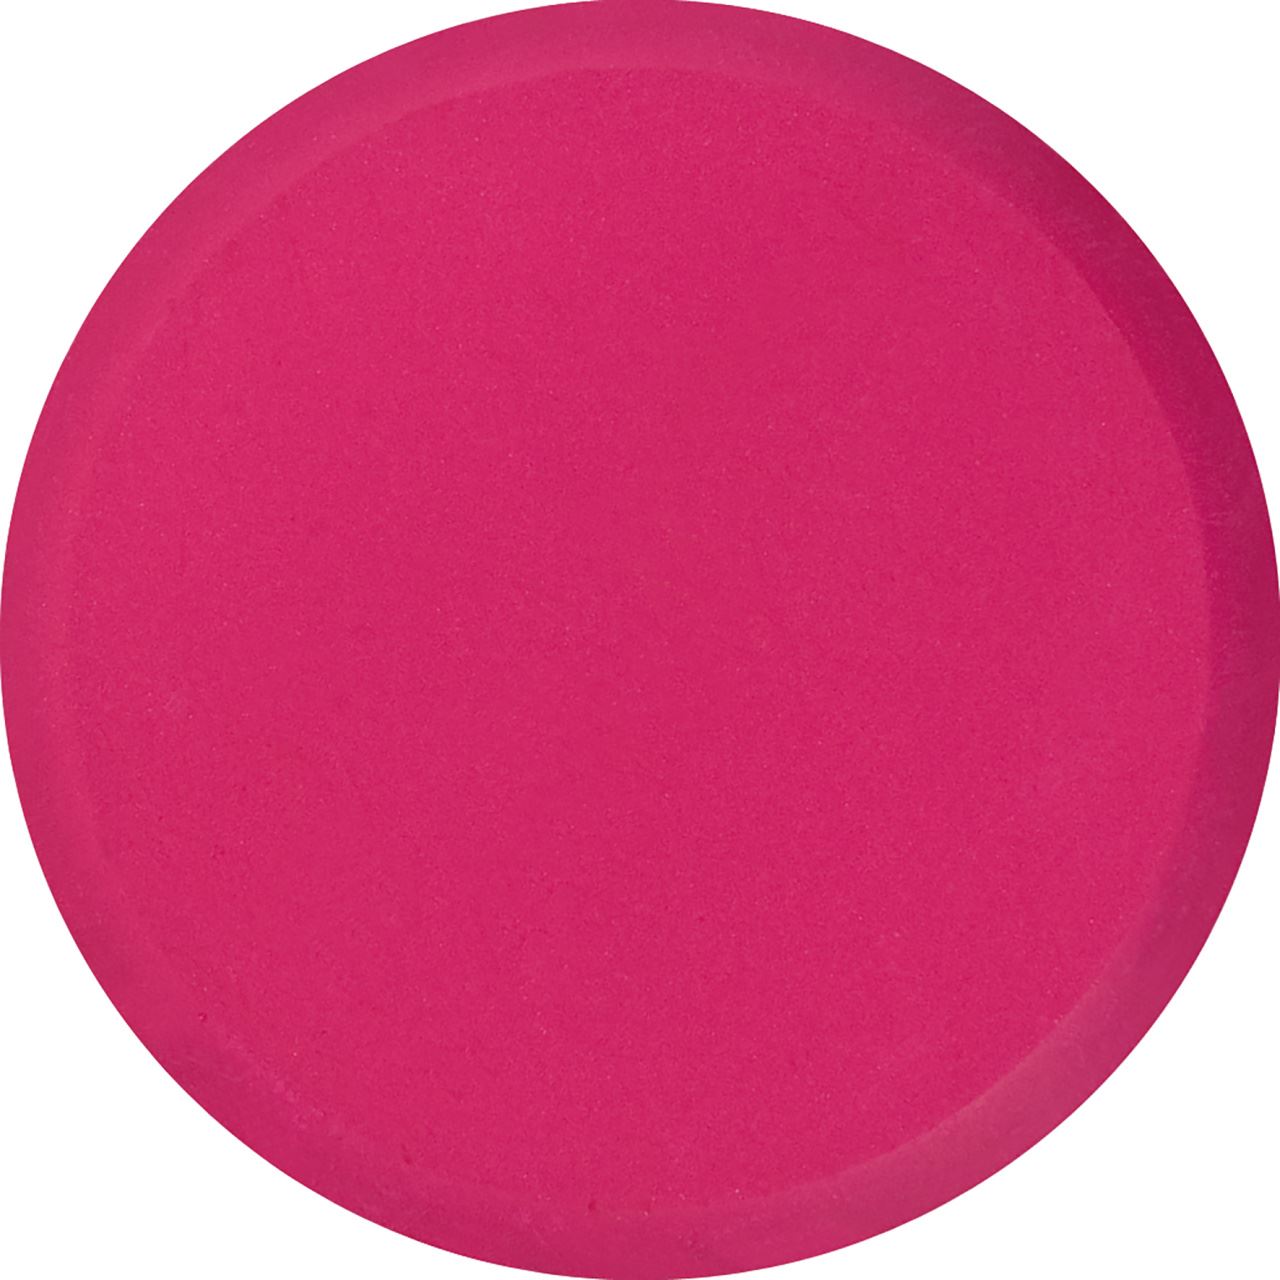 Eberhard-Faber - EFA Color Farbtablette 44mm, karmin rosa